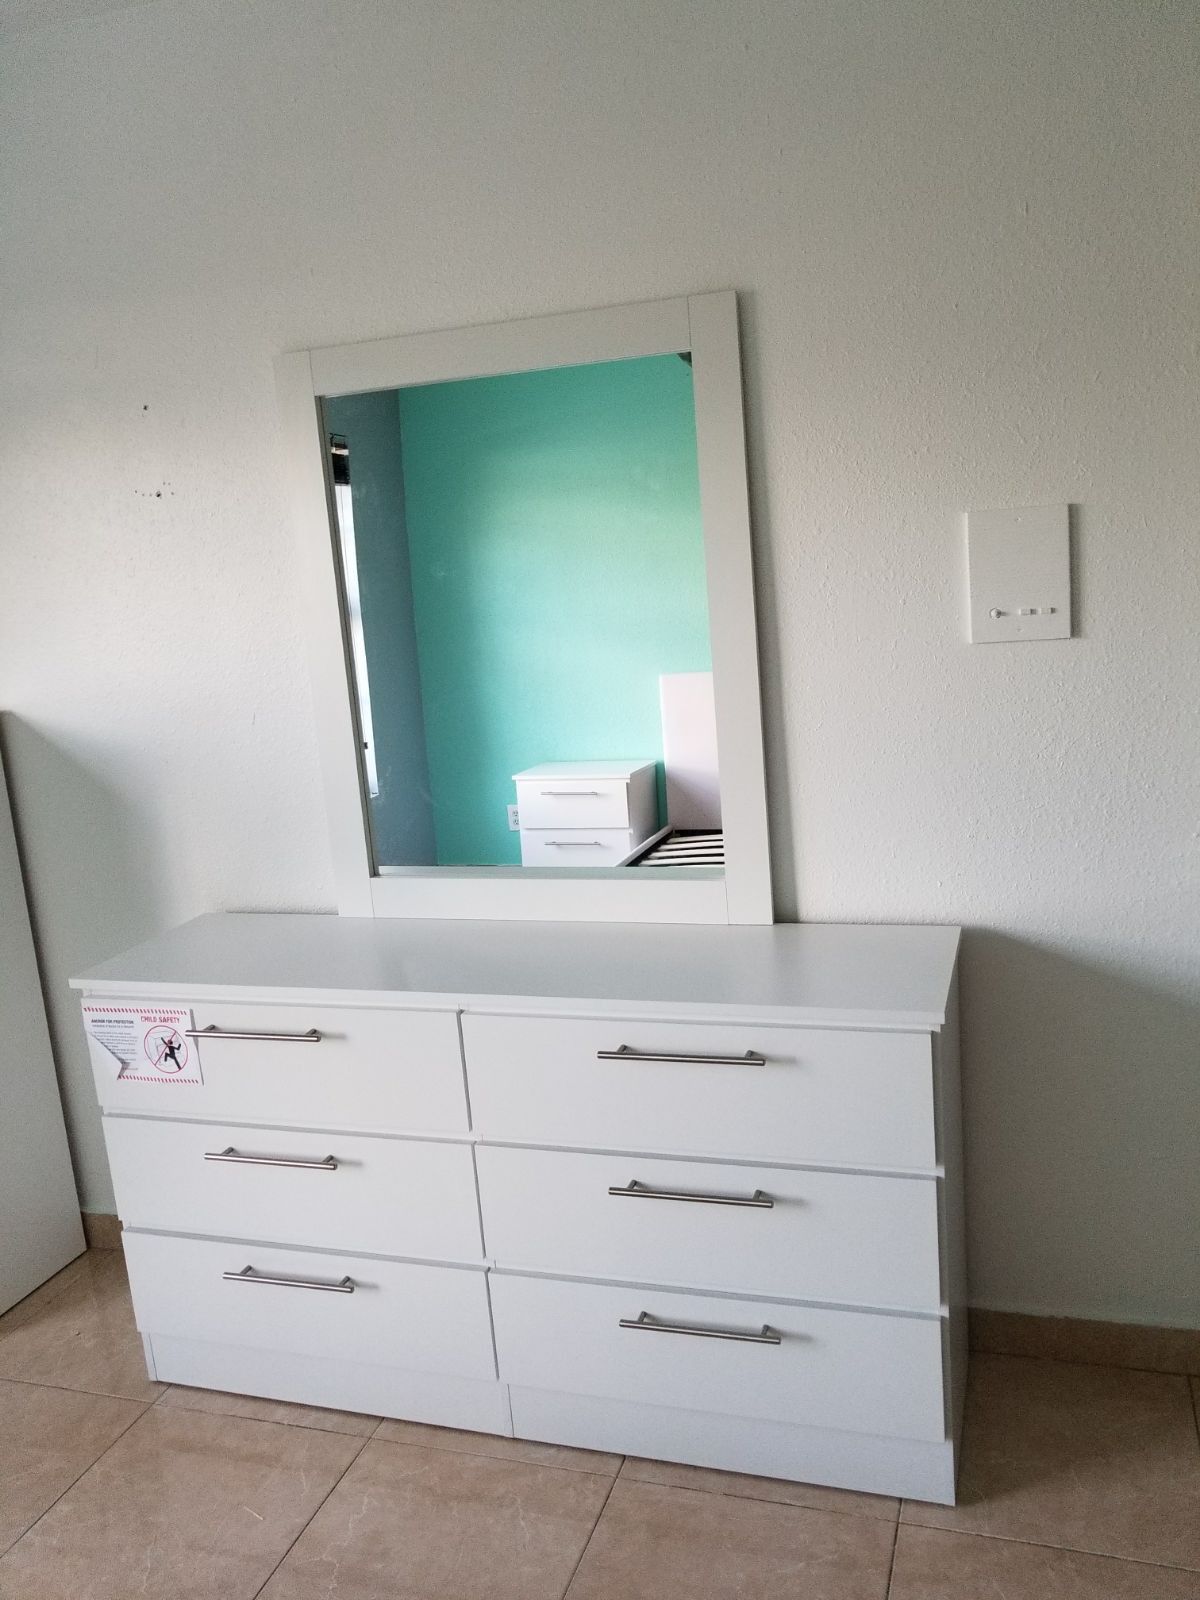 Comoda con espejo... Dresser with mirror